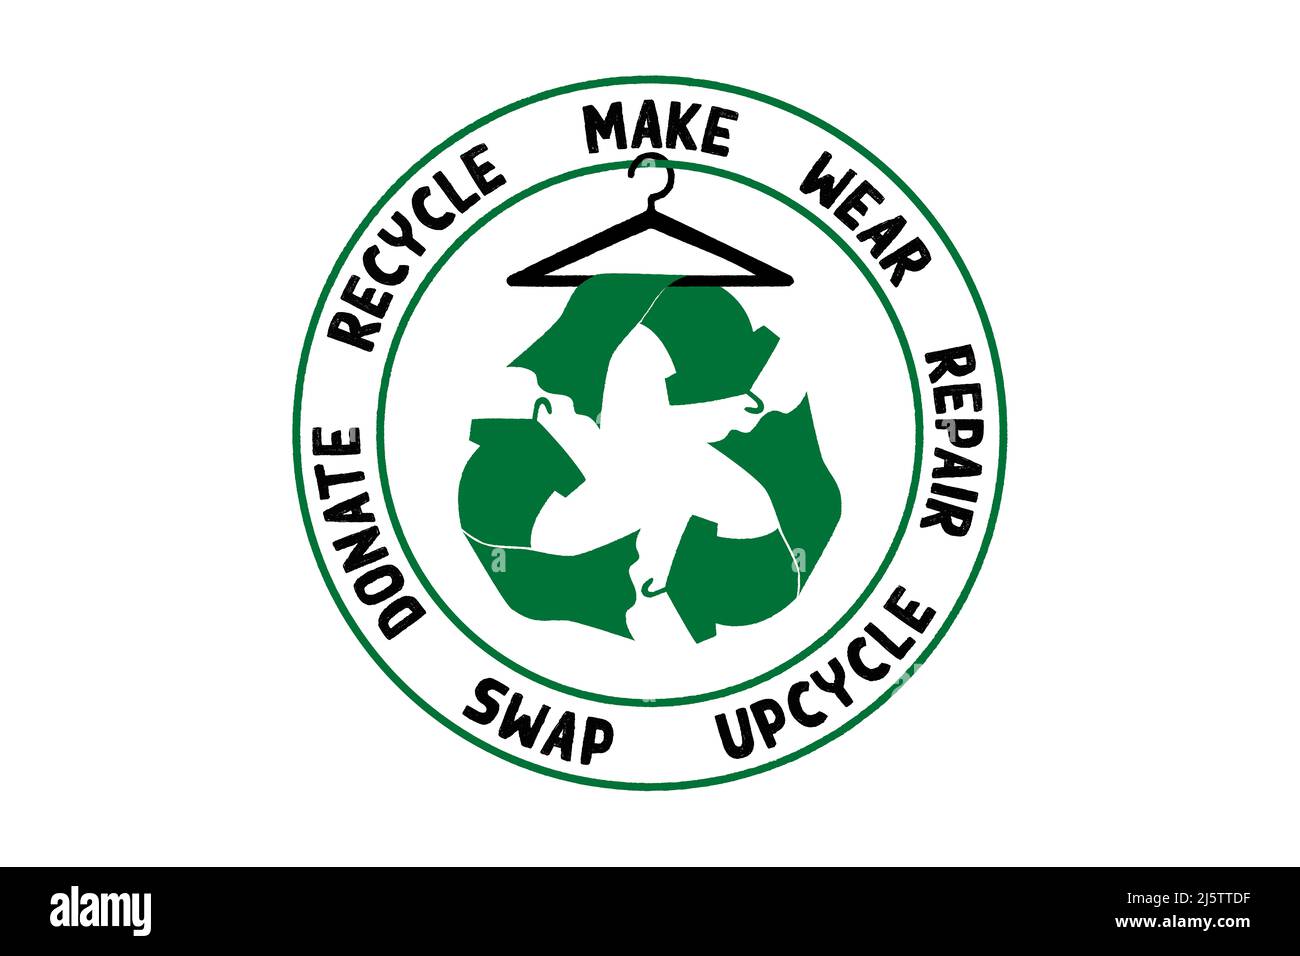 Circular Economy Textilien, machen, tragen, reparieren, upcycle, Tauschen, spenden, recyceln mit Öko Kleidung Recycling Icon nachhaltige Mode Konzept Stockfoto